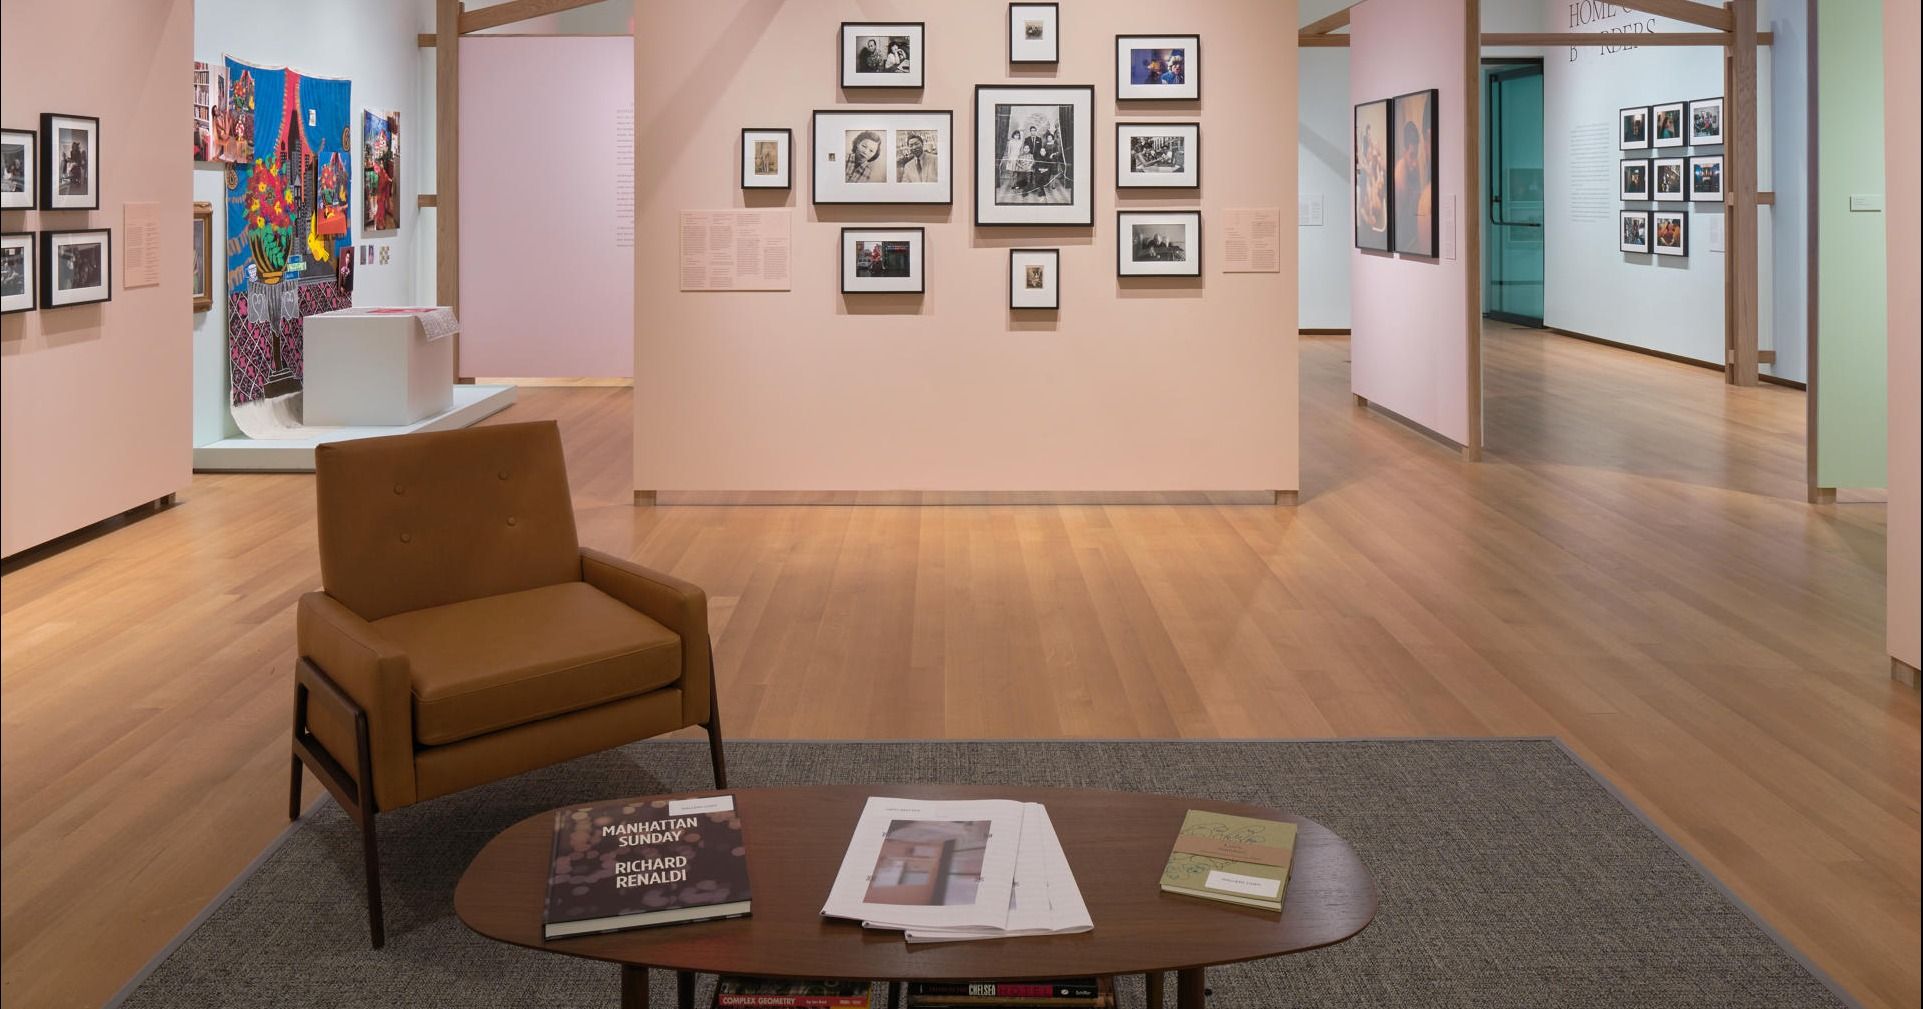 Museo de Nueva York celebra su centenario con exposición fotográfica